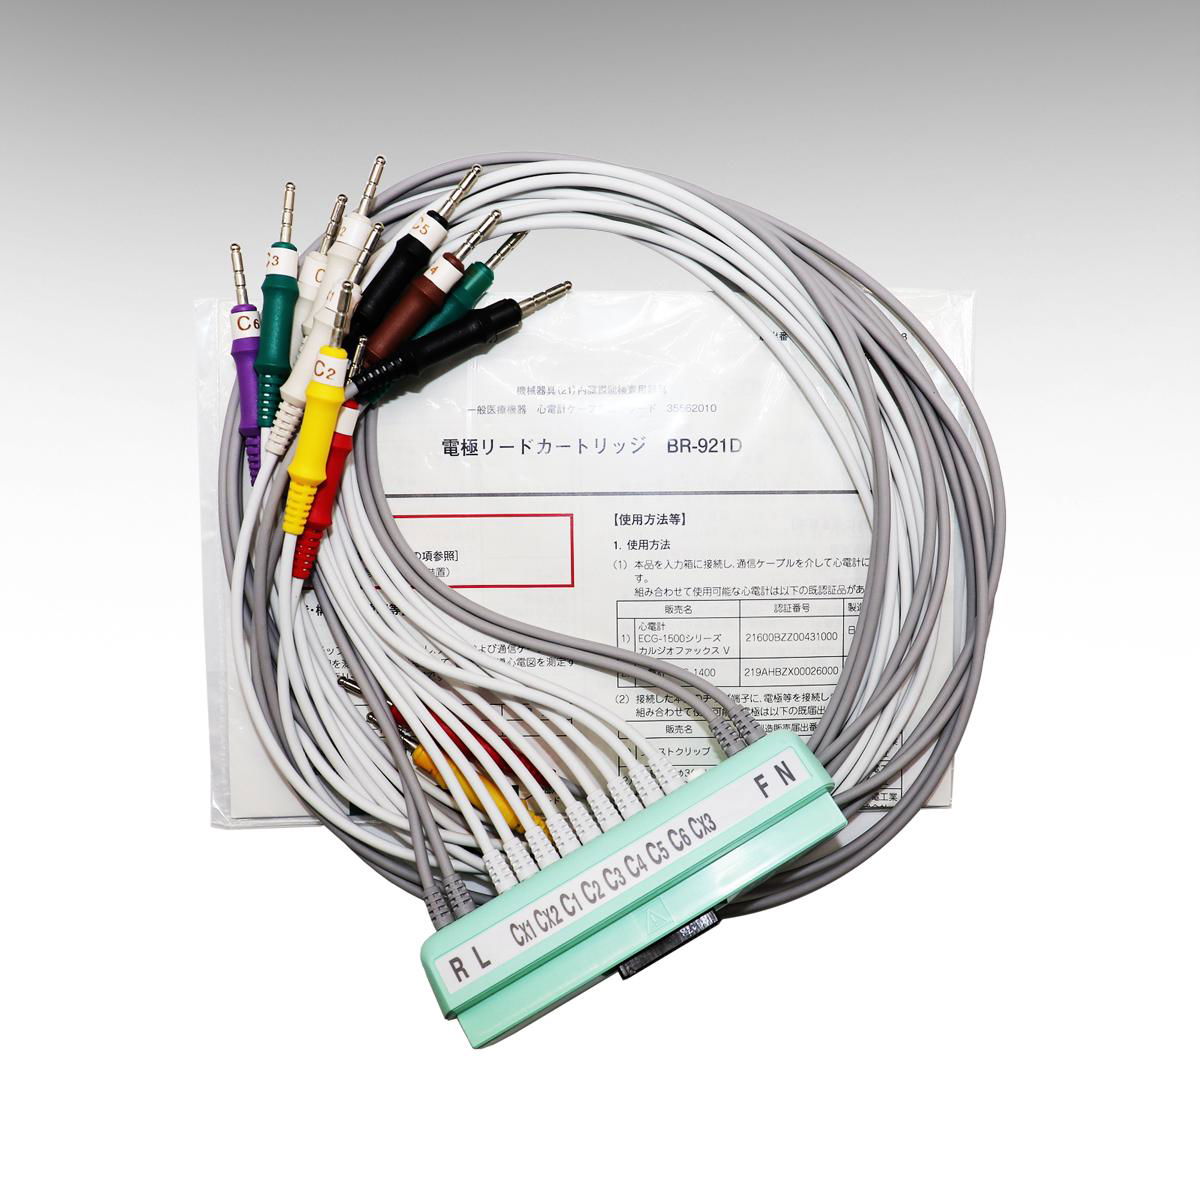 NIHOH KOHDEN ECG-1550P BR-921D K093L 10 leads ecg cable ecg cable 7 bin 4